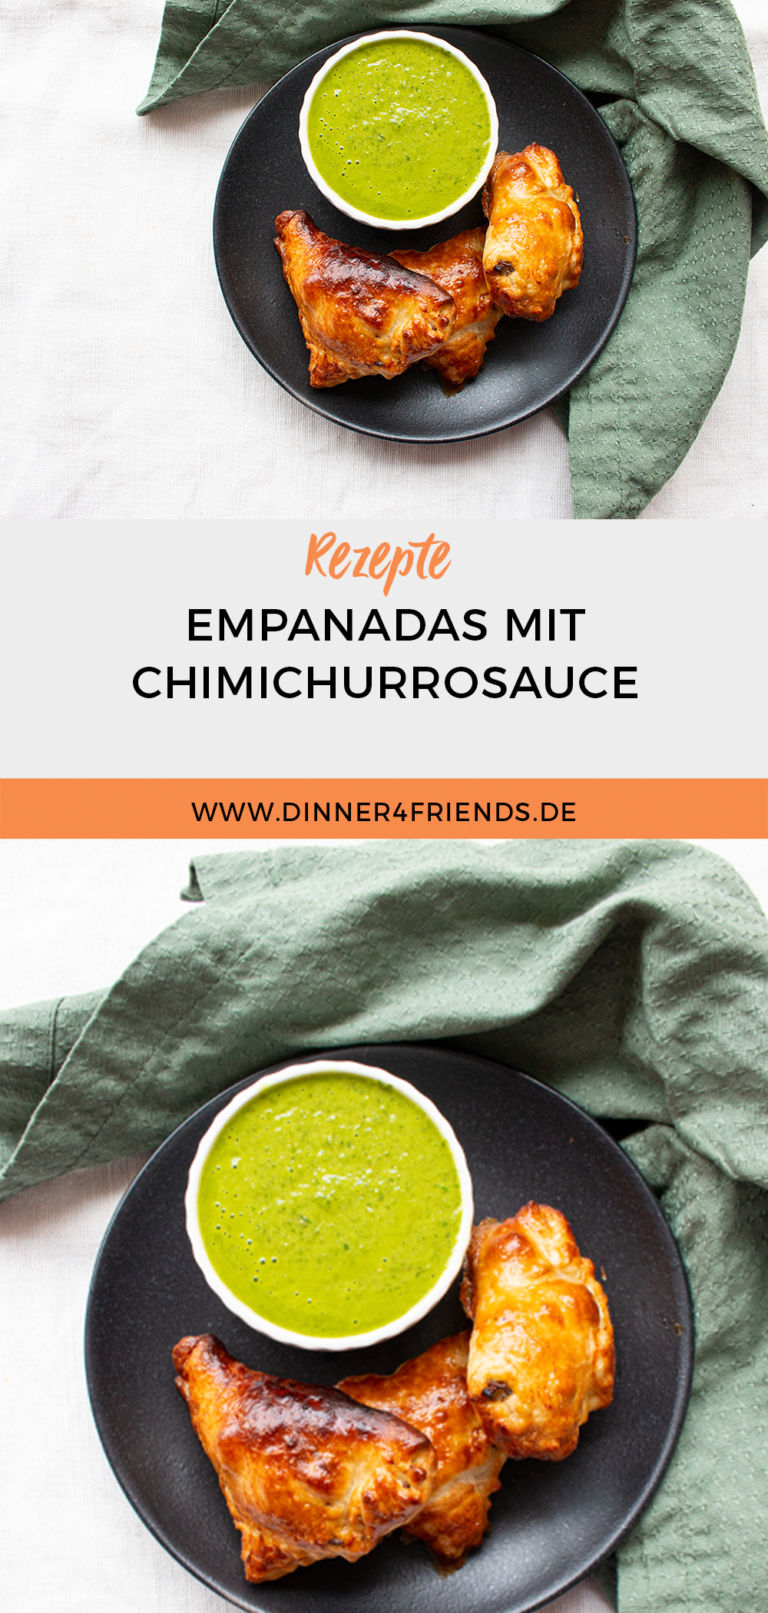 Empanadas: brasilianische Snacks mit Fertigteig - Dinner4Friends